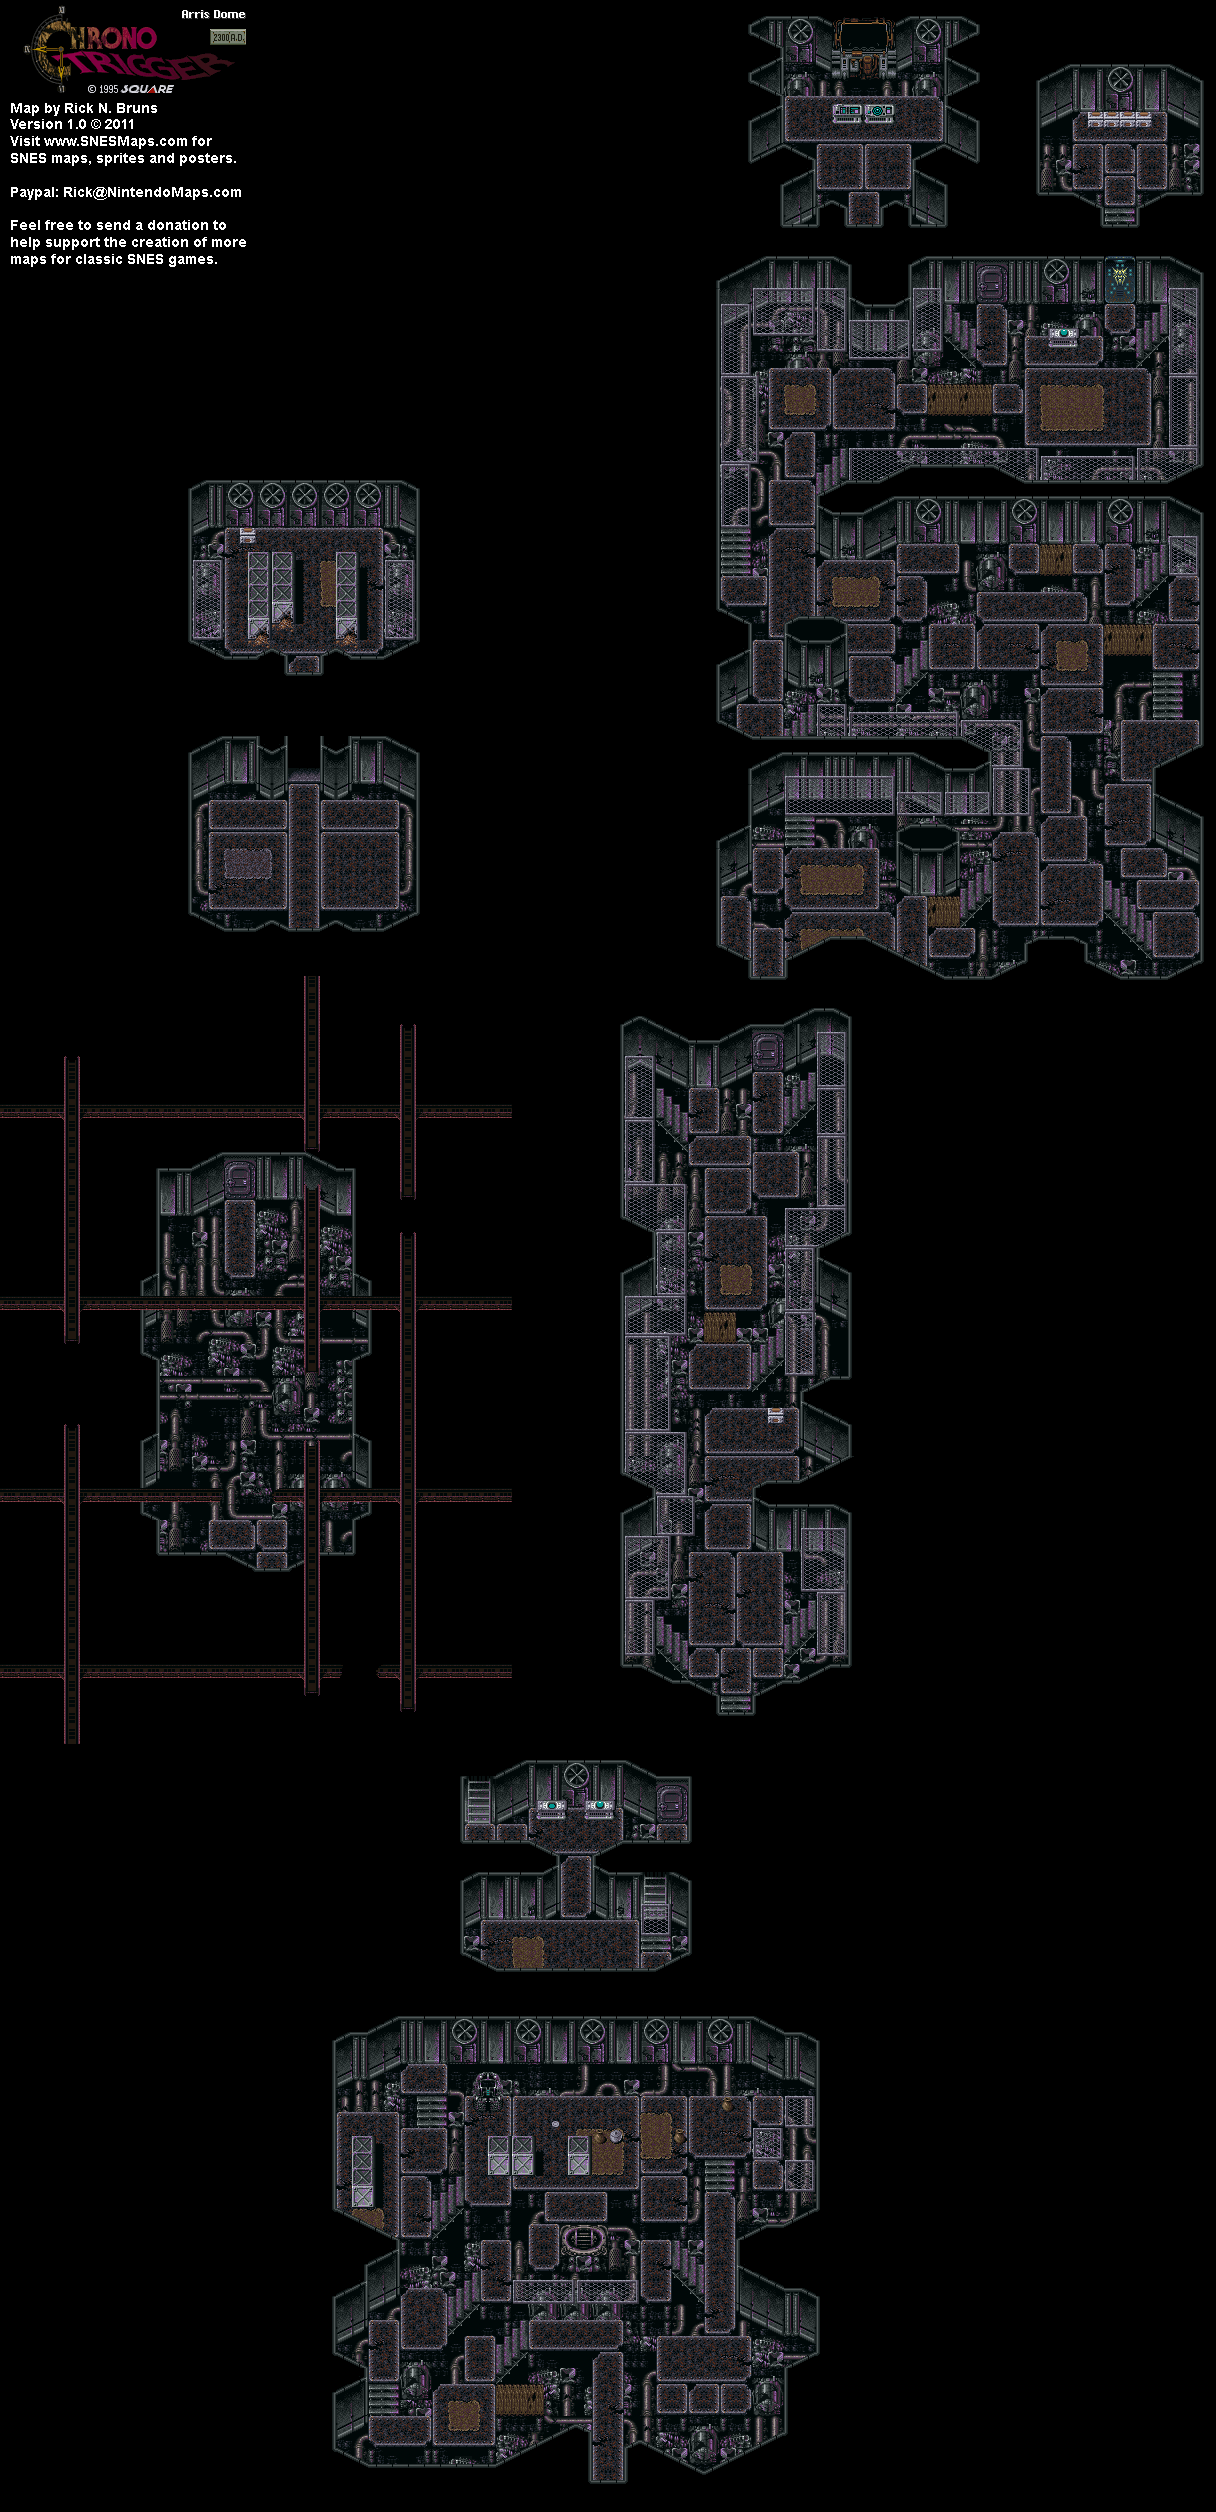 Chrono Trigger - Arris Dome (2300 AD) Super Nintendo SNES Map BG